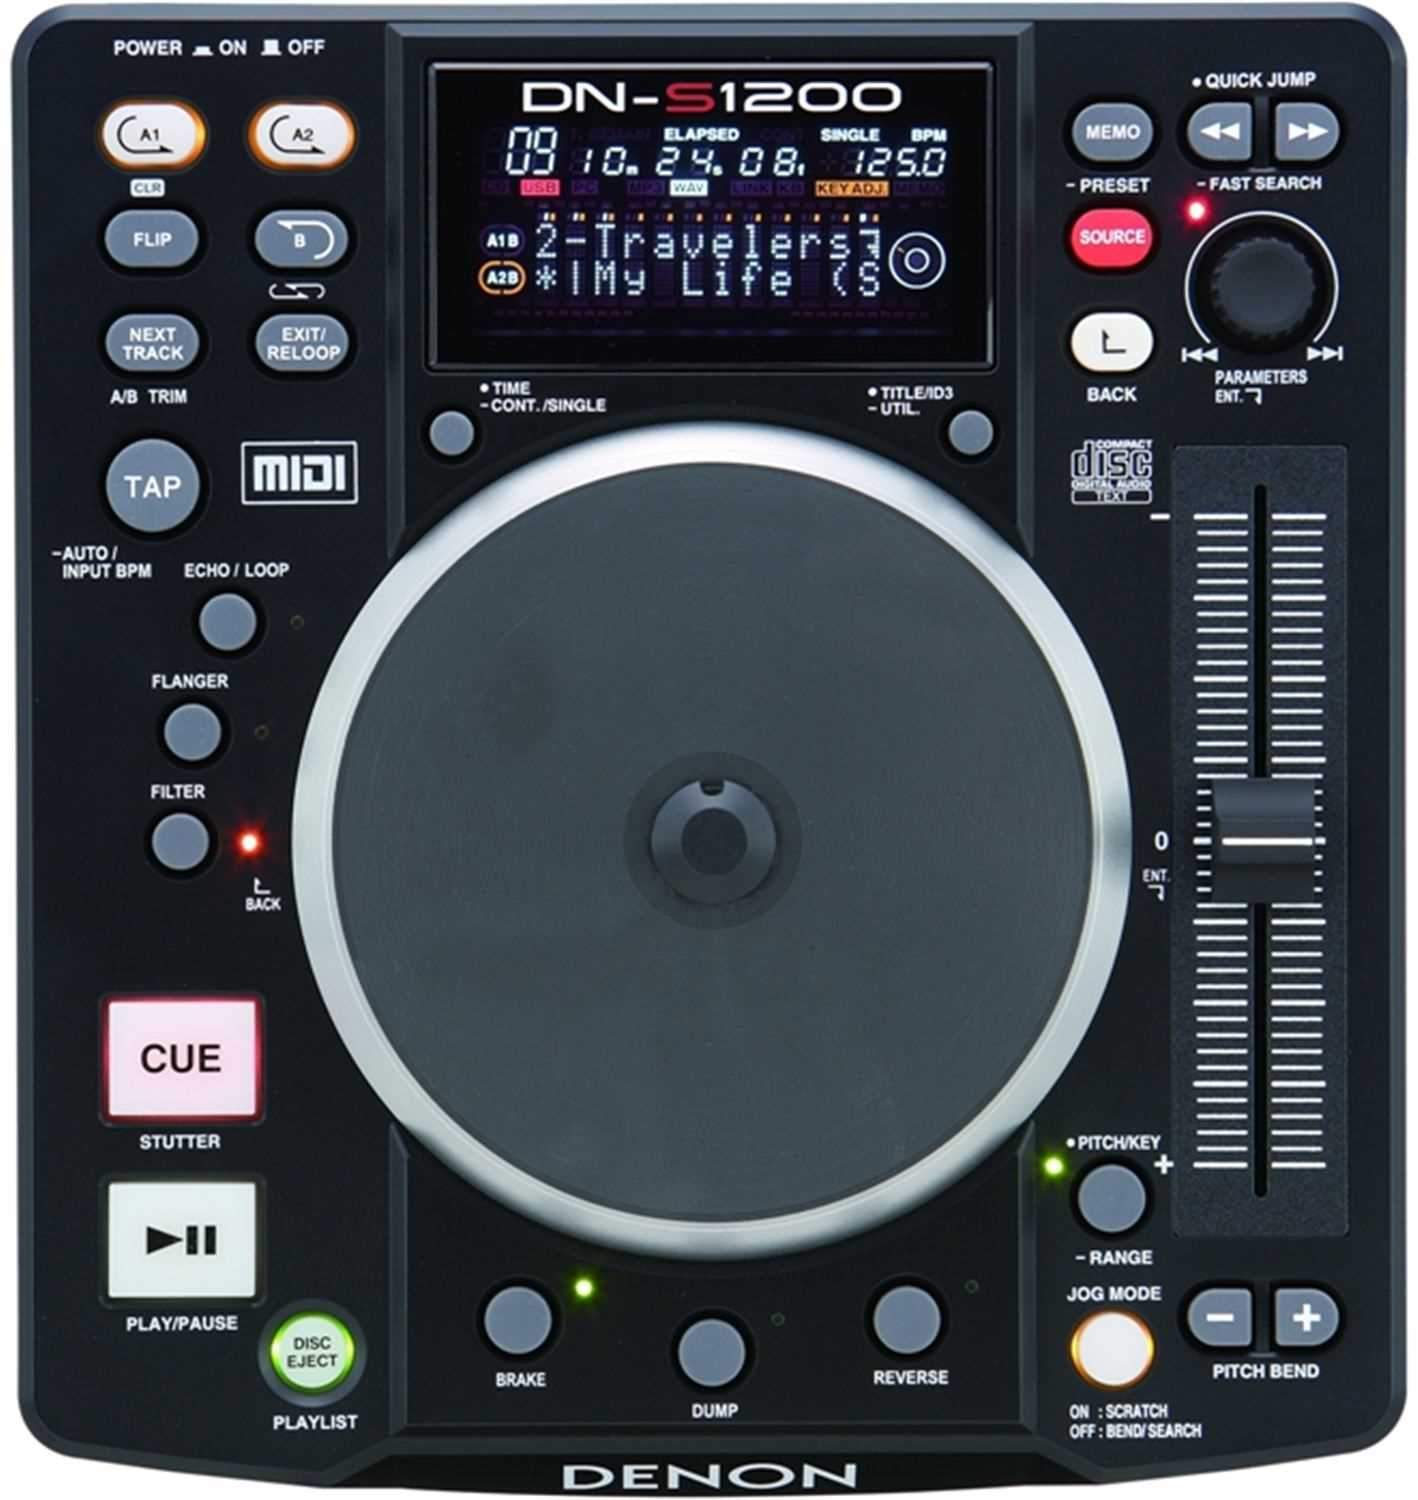 Denon DJ DN-S1200 CD/USB Media Player & Controller